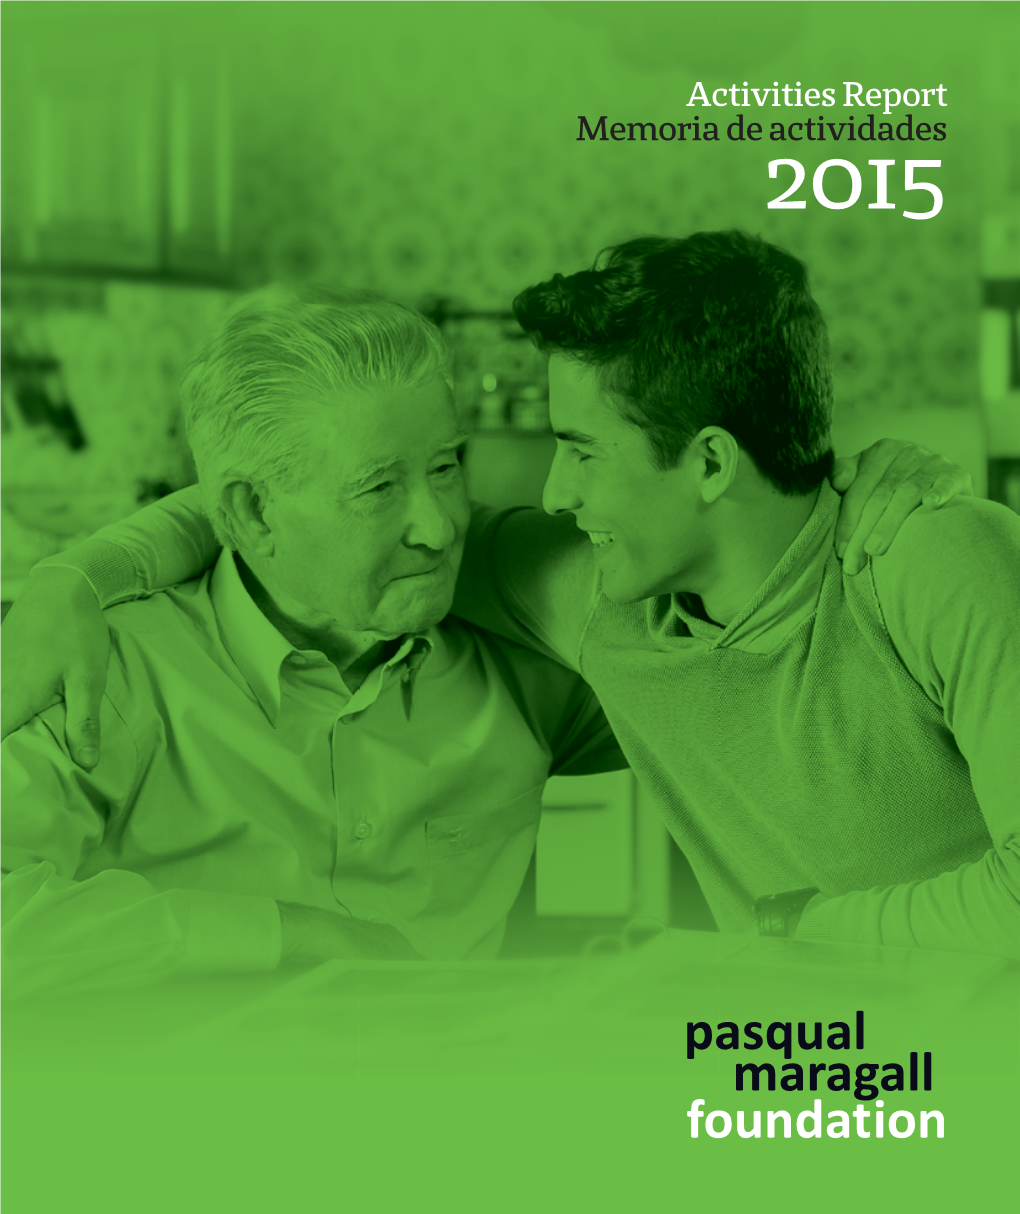 Memoria De Actividades 2015 Activities Report 2015 Memoria De Actividades